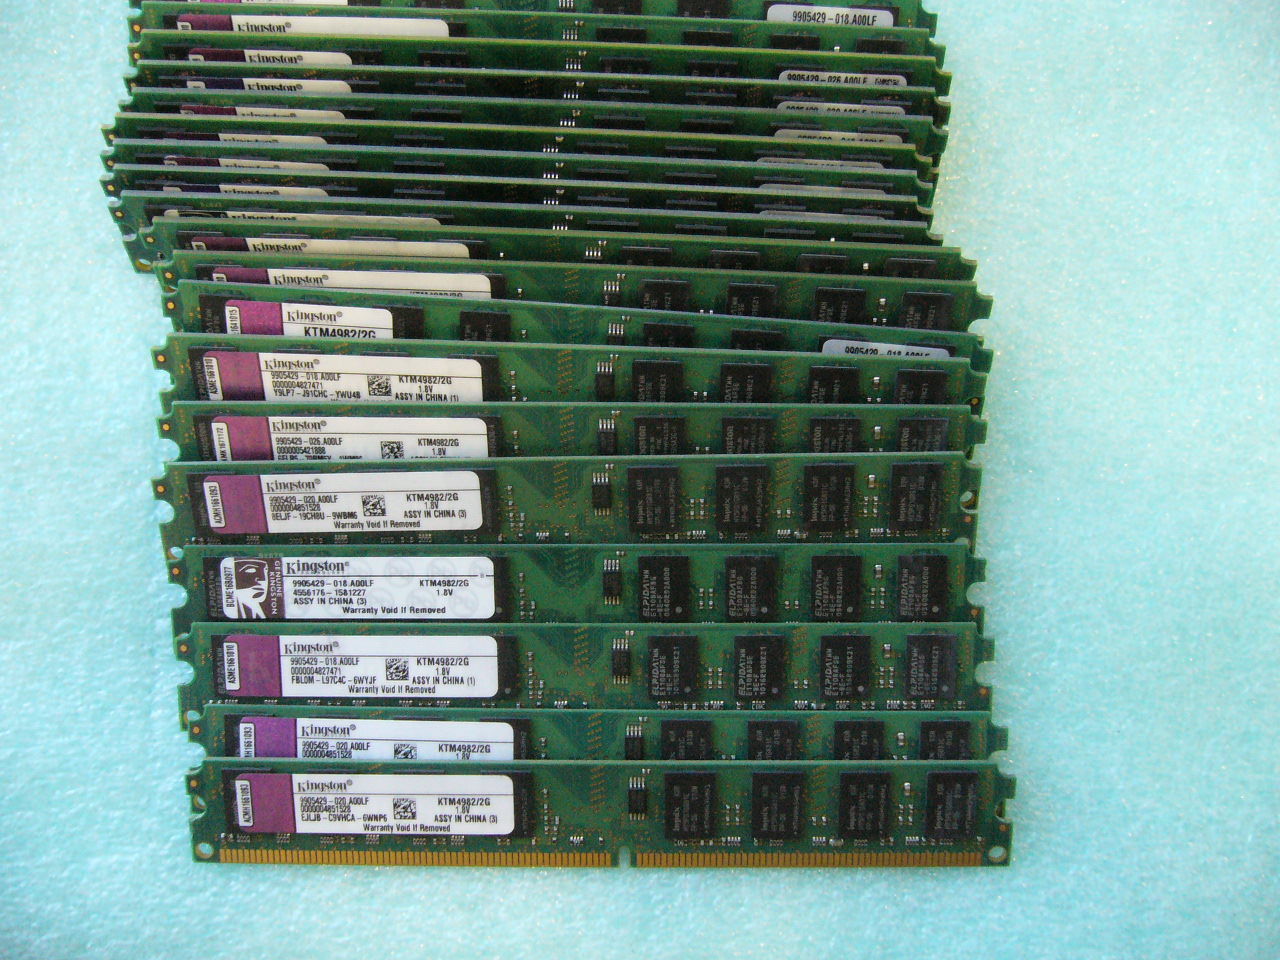 QTY 1x 2GB DDR2 667Mhz non-ECC desktop memory Kingston KTM4982/2G